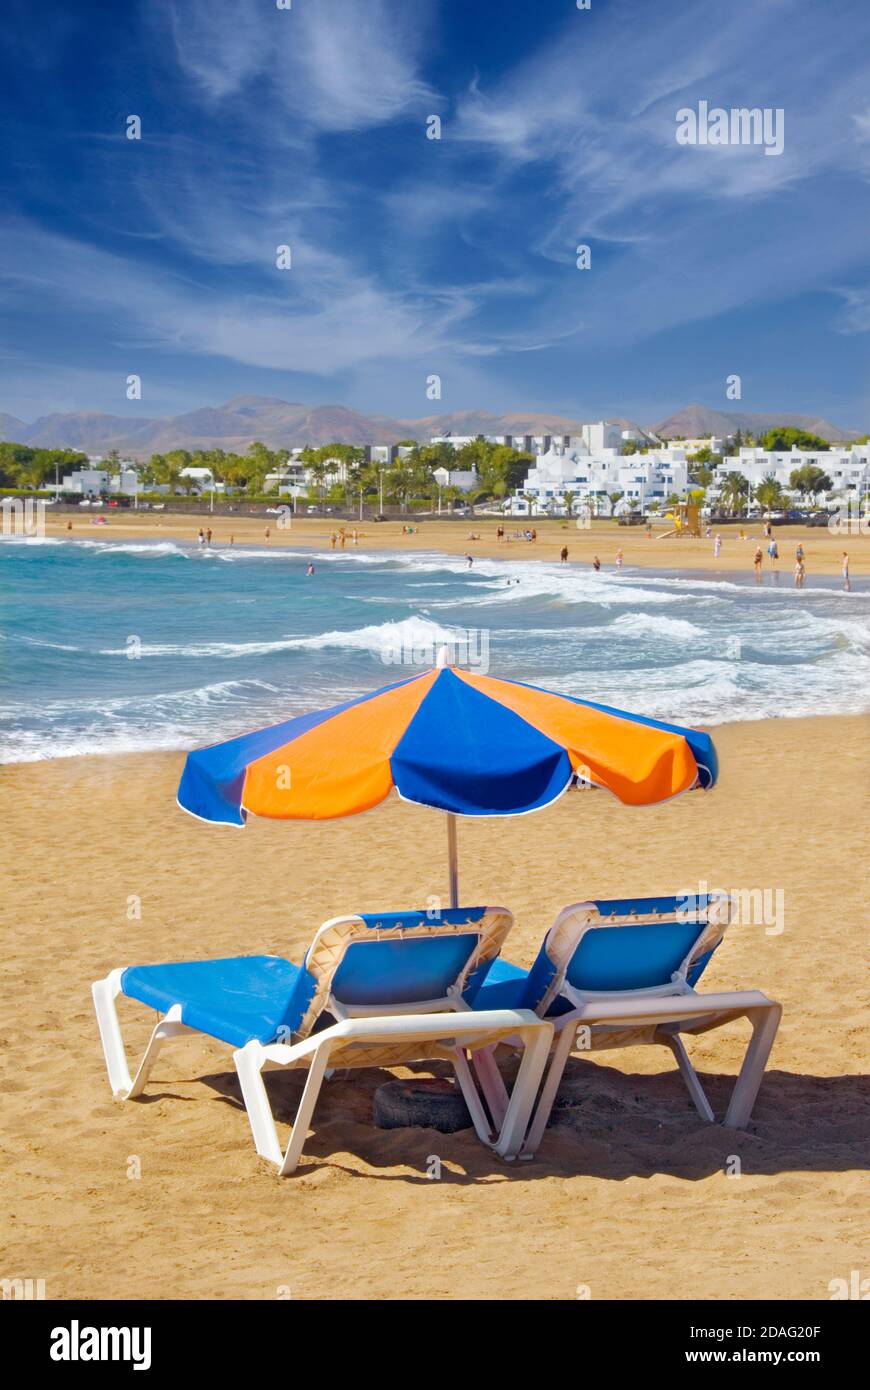 Concept de vacances Playa del Carmen plage parasol transat côte plage de sable avec parasols et chaises longues, Lanzarote, îles Canaries, Espagne Banque D'Images